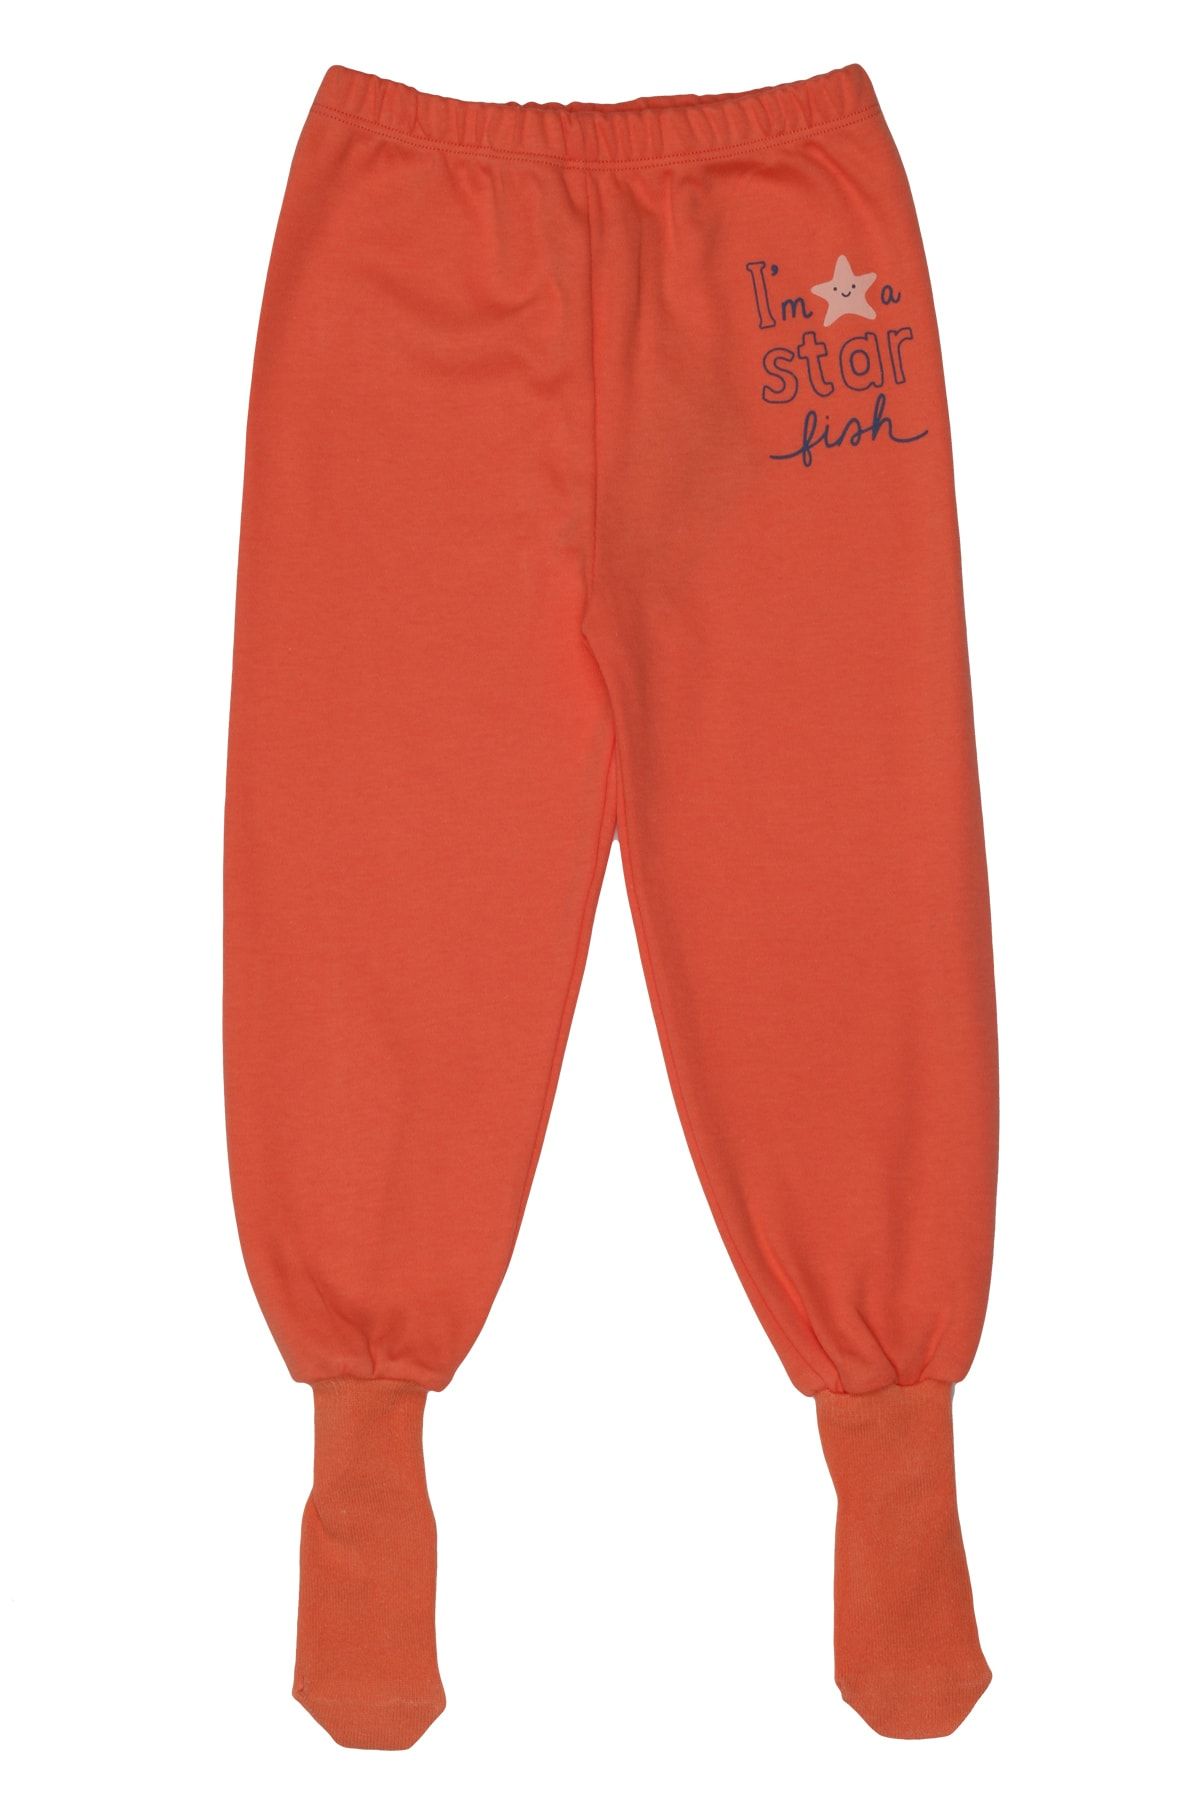 Melekpare Kız Erkek Bebek Patikli Pantolon Kendinden Çoraplı Alt Pijama %100 Organik Pamuk Yumuşacık Kumaş